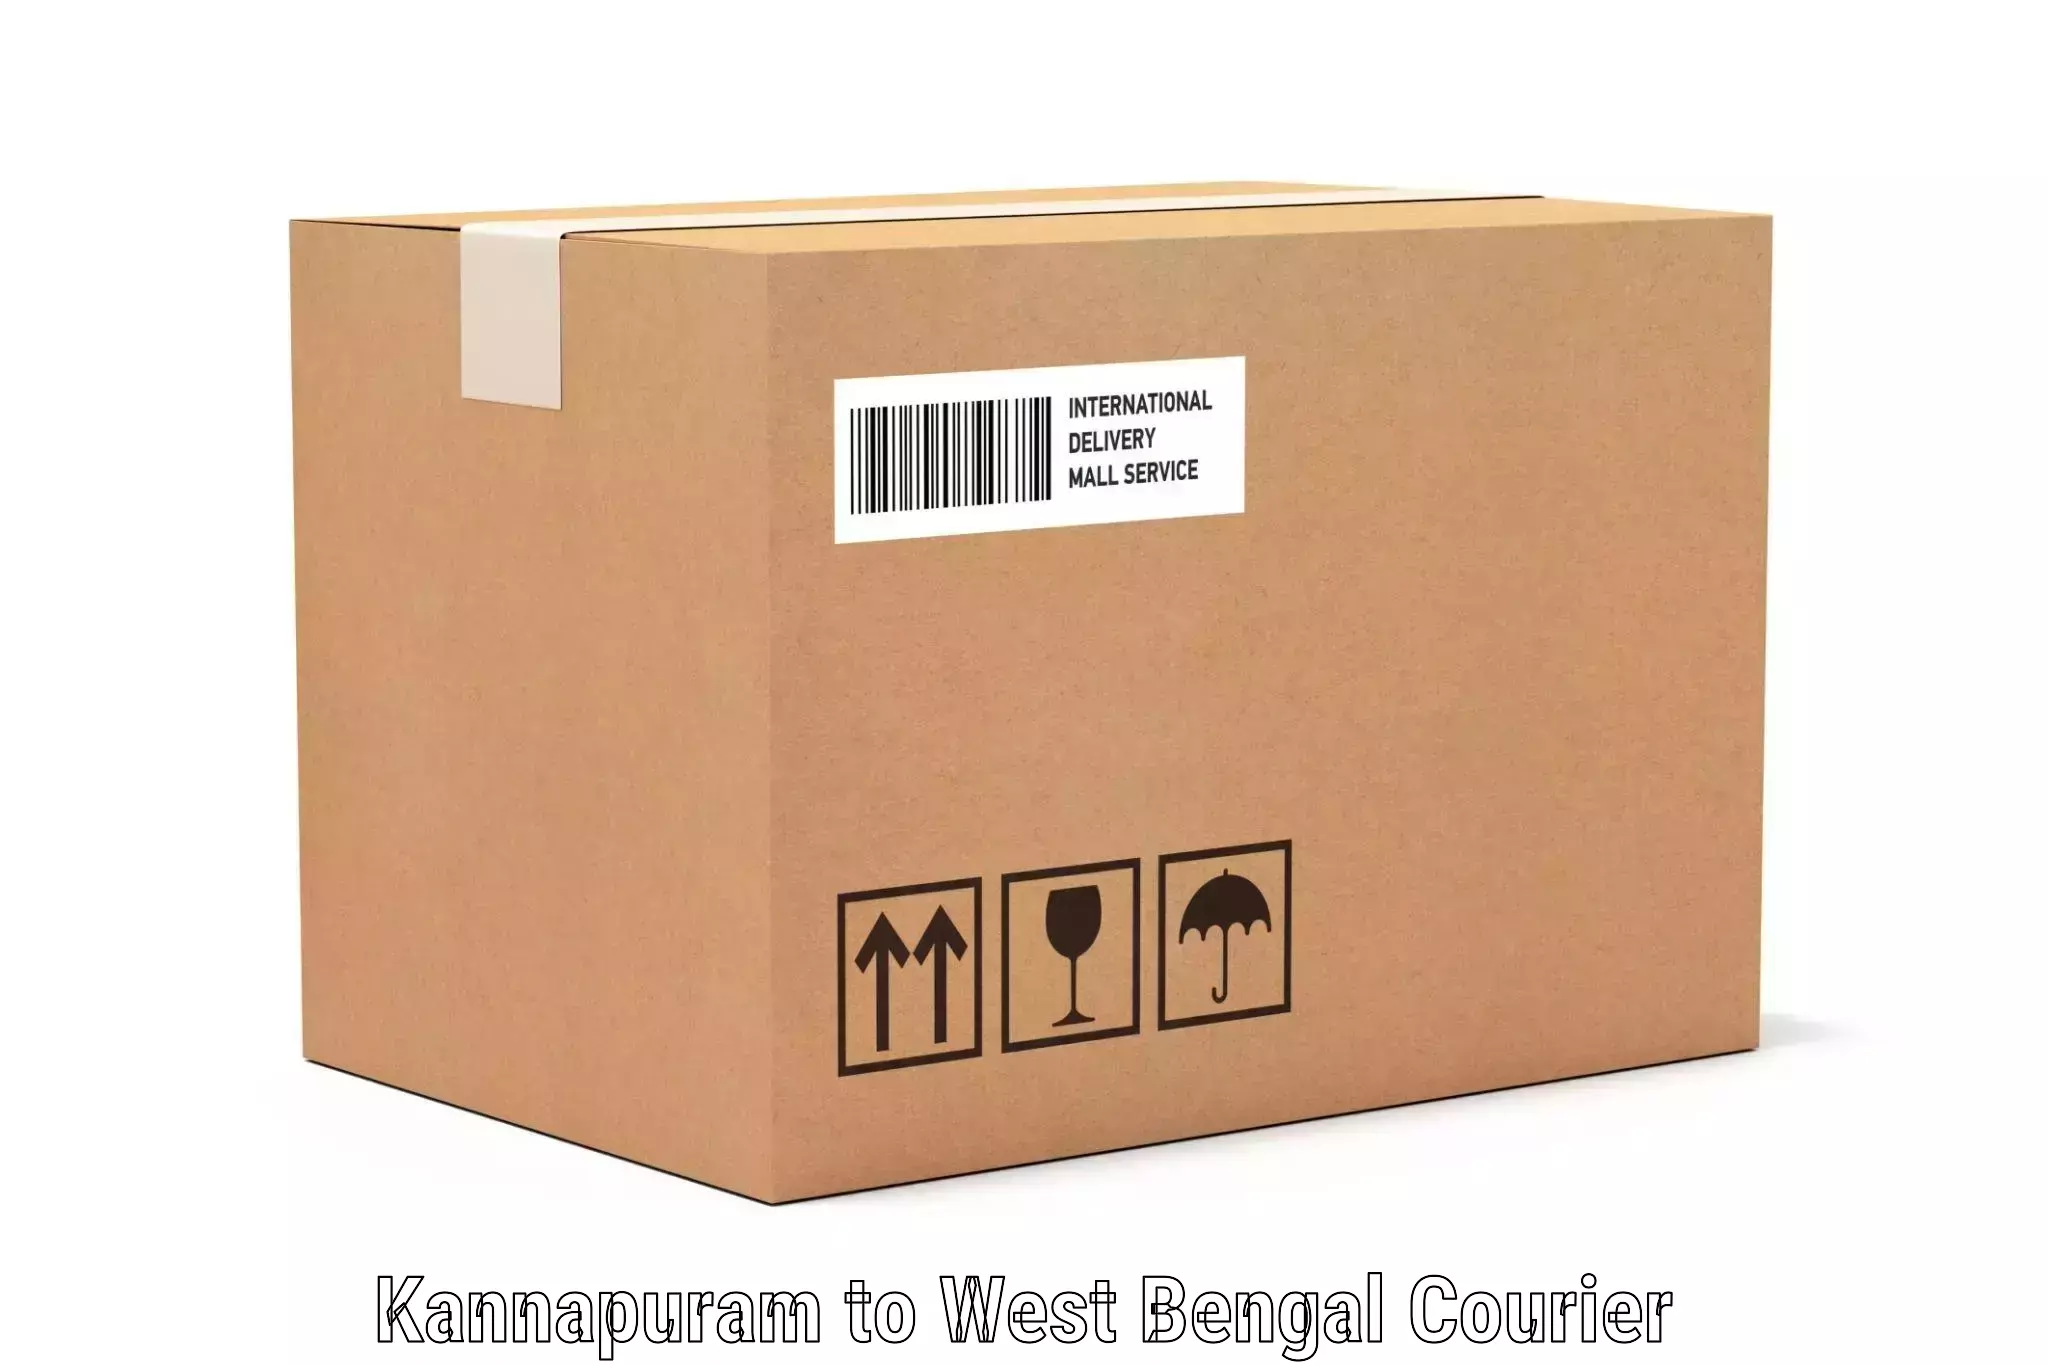 Luggage transport company Kannapuram to West Bengal